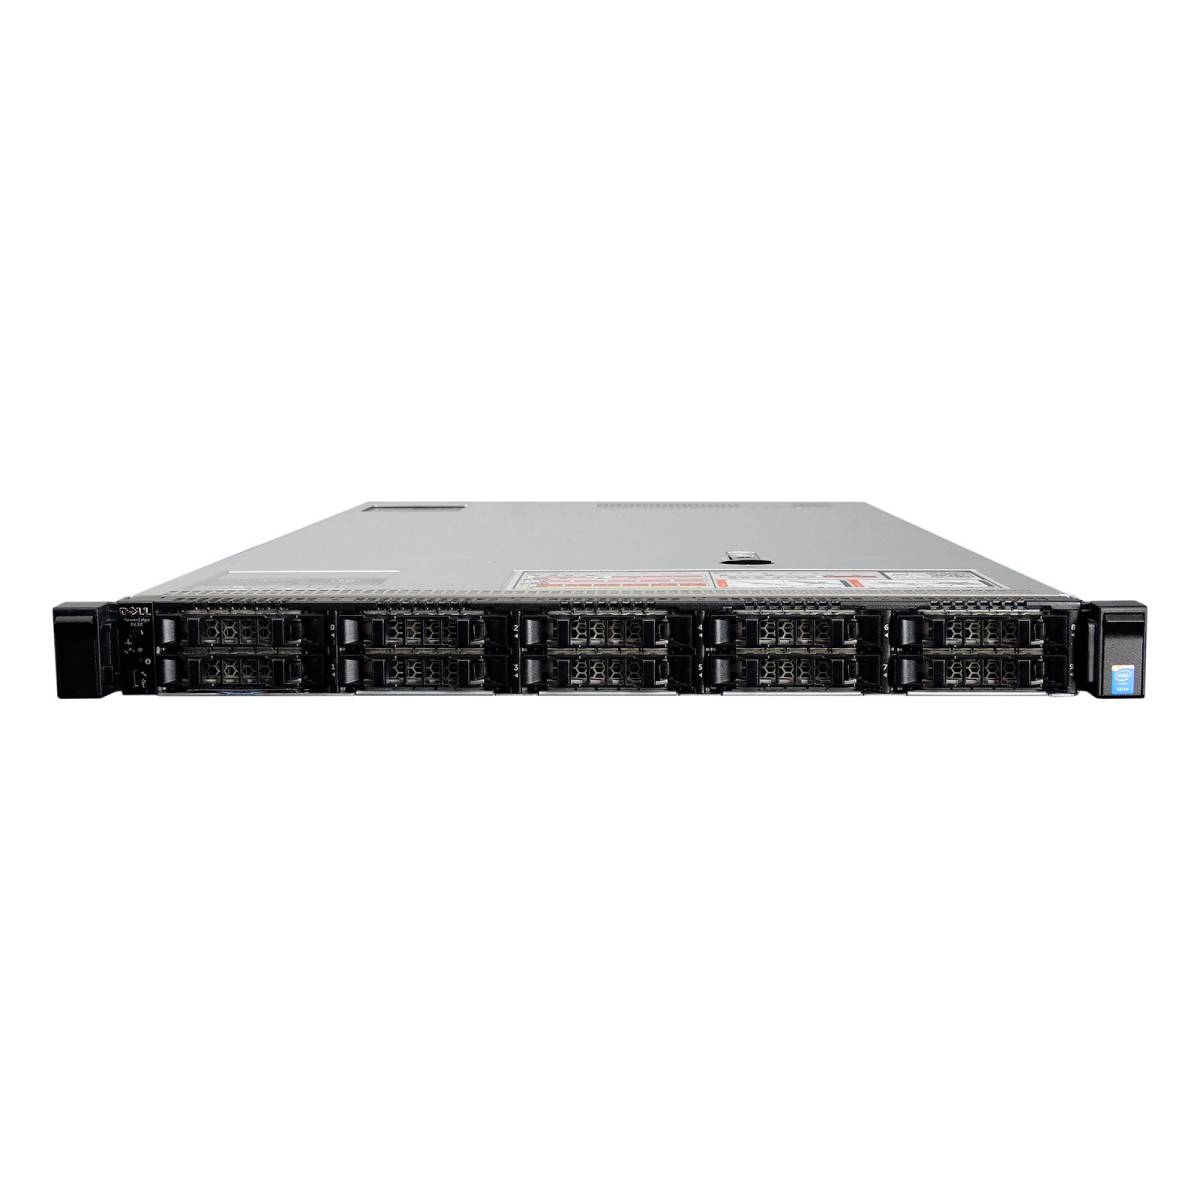 Изображение Сервер DELL PowerEdge R630 Xeon 2x E5-2699Av4 256Gb 2133P DDR4 10x noHDD 2.5", SAS RAID Perc H330, 2*PSU 495W